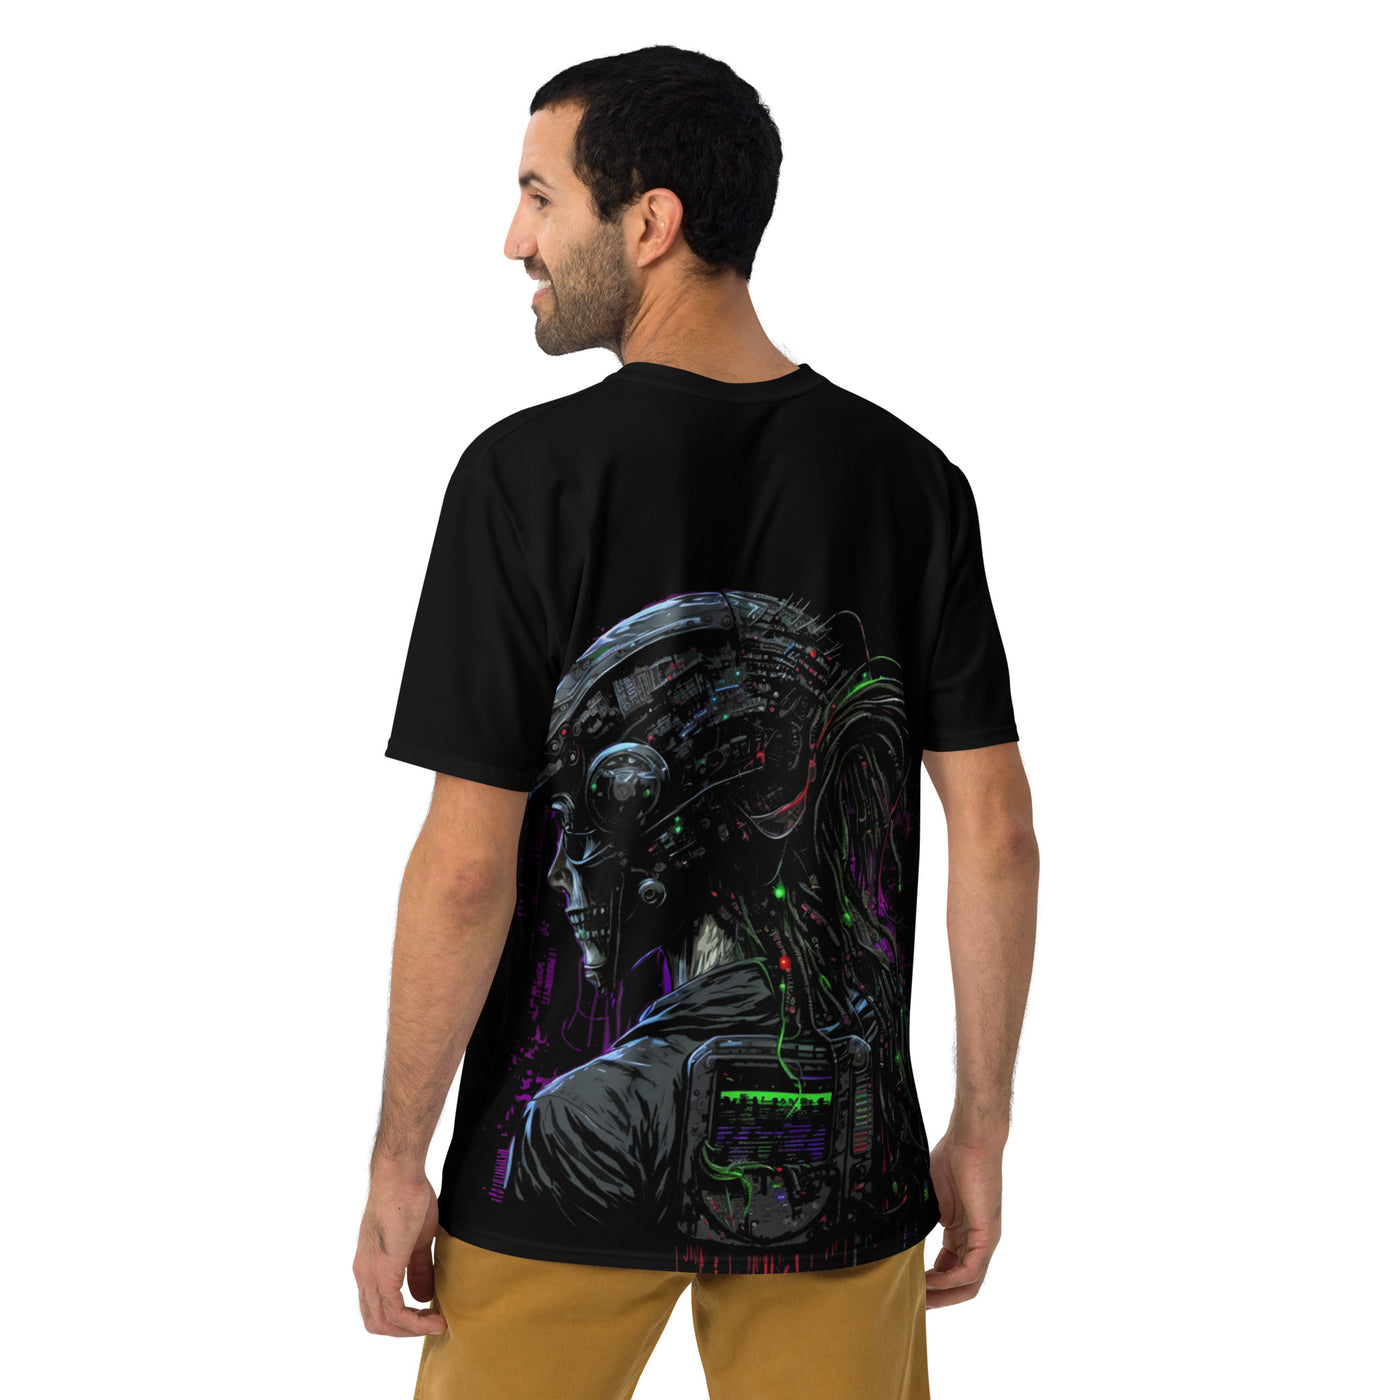 Cyberware assassin v51  - Men's t-shirt (back print)